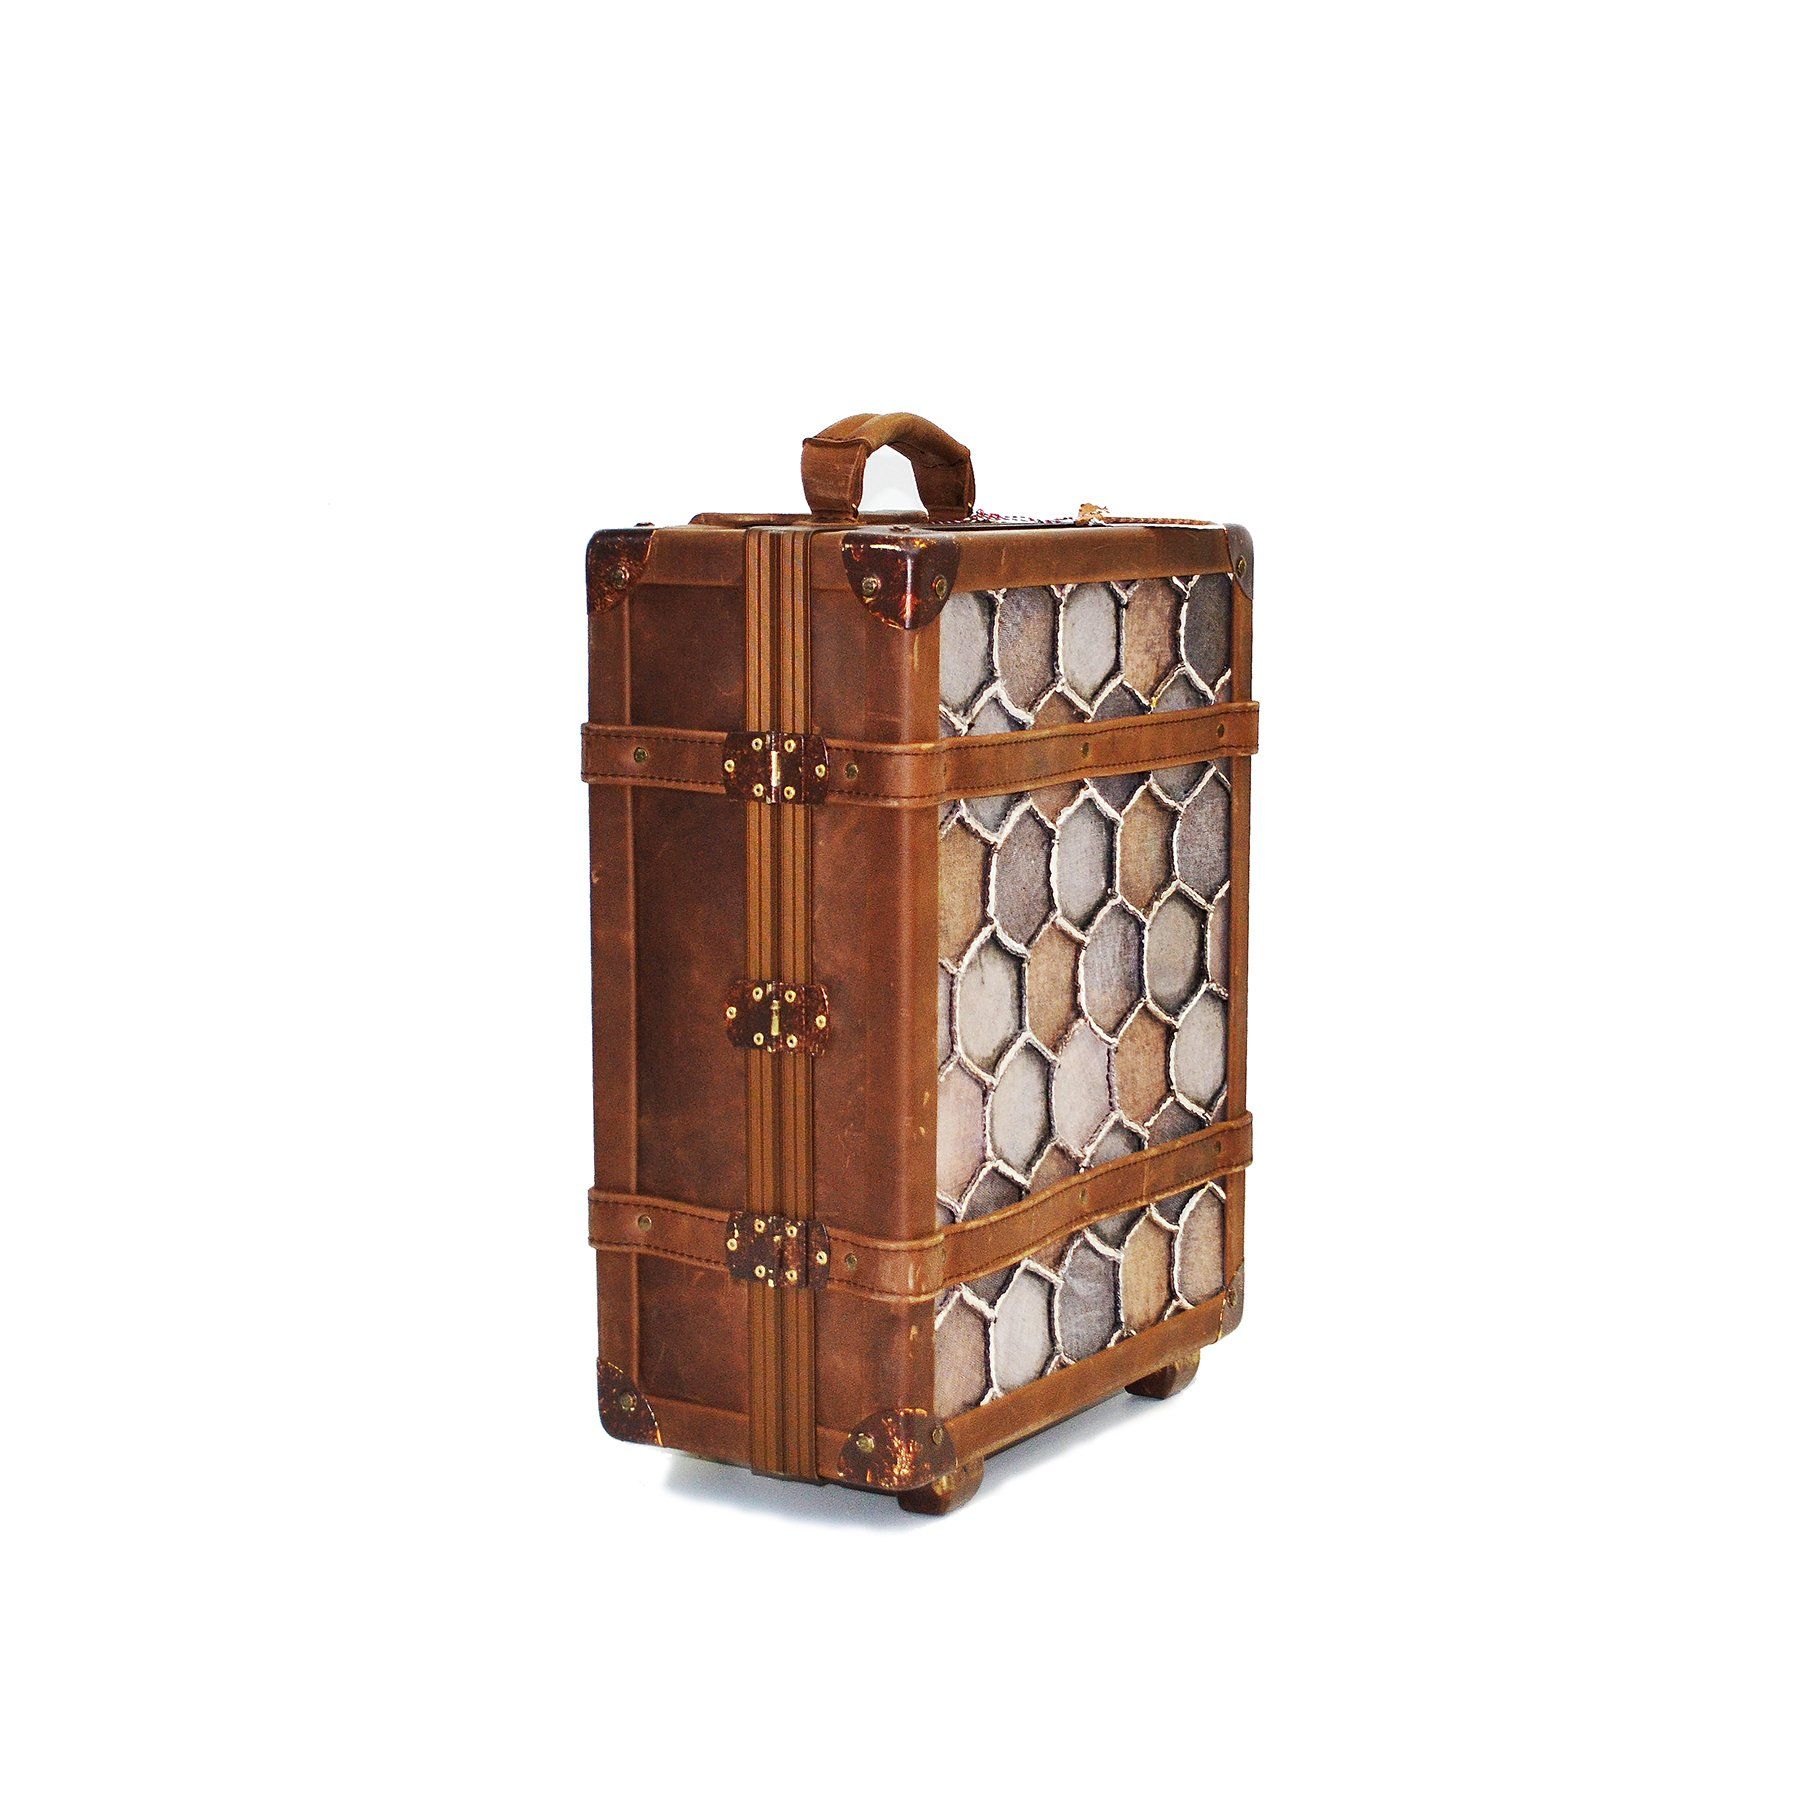 pangaea trolley dal riciclo dei palloni da calcio marrone vintage baule cucito a mano valigia lato